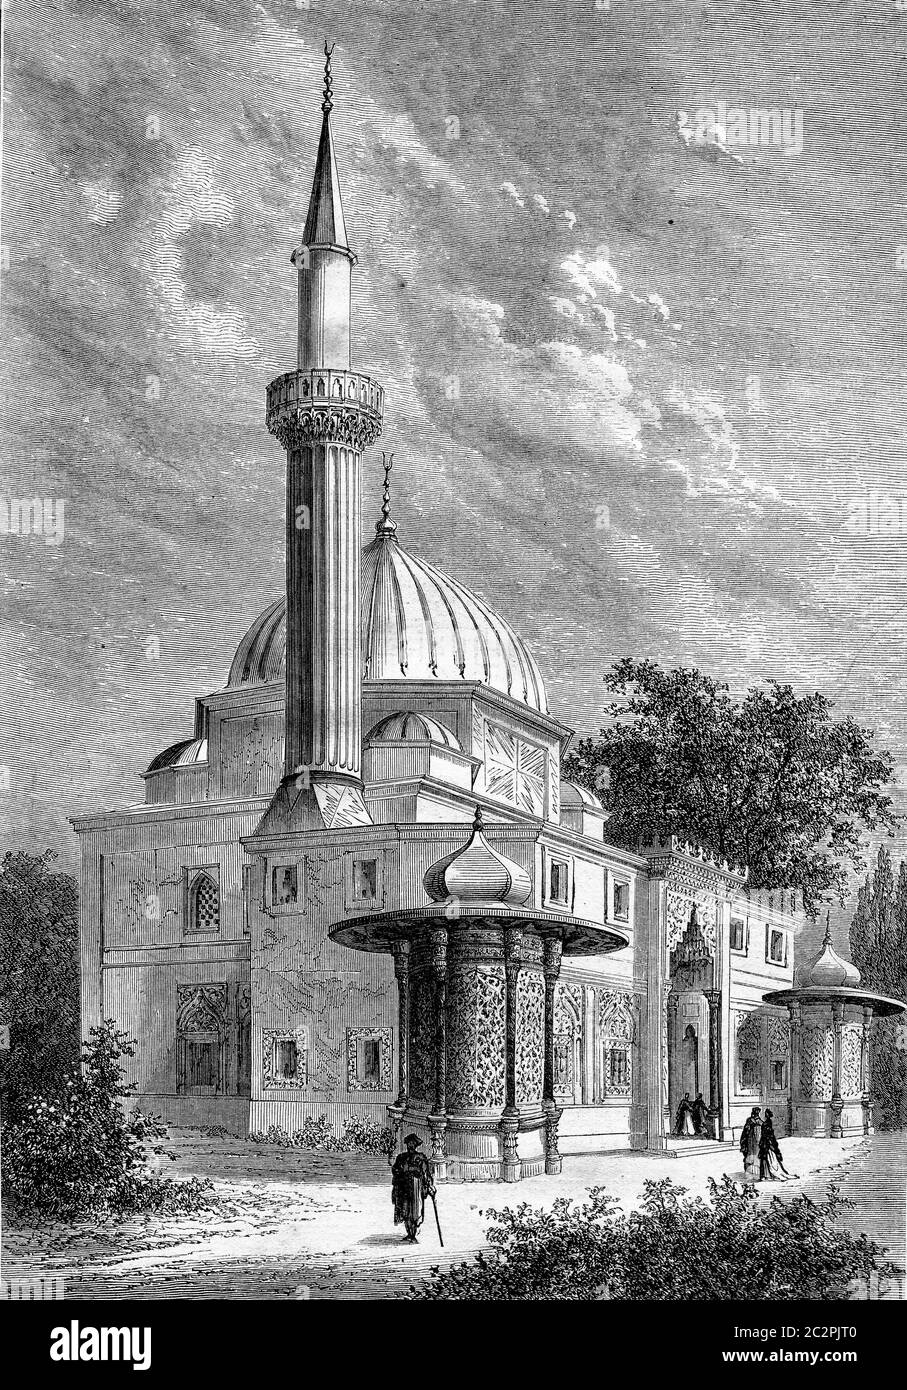 Weltausstellung, Moschee im Park, Vintage gravierte Illustration. Magasin Pittoresque 1867. Stockfoto